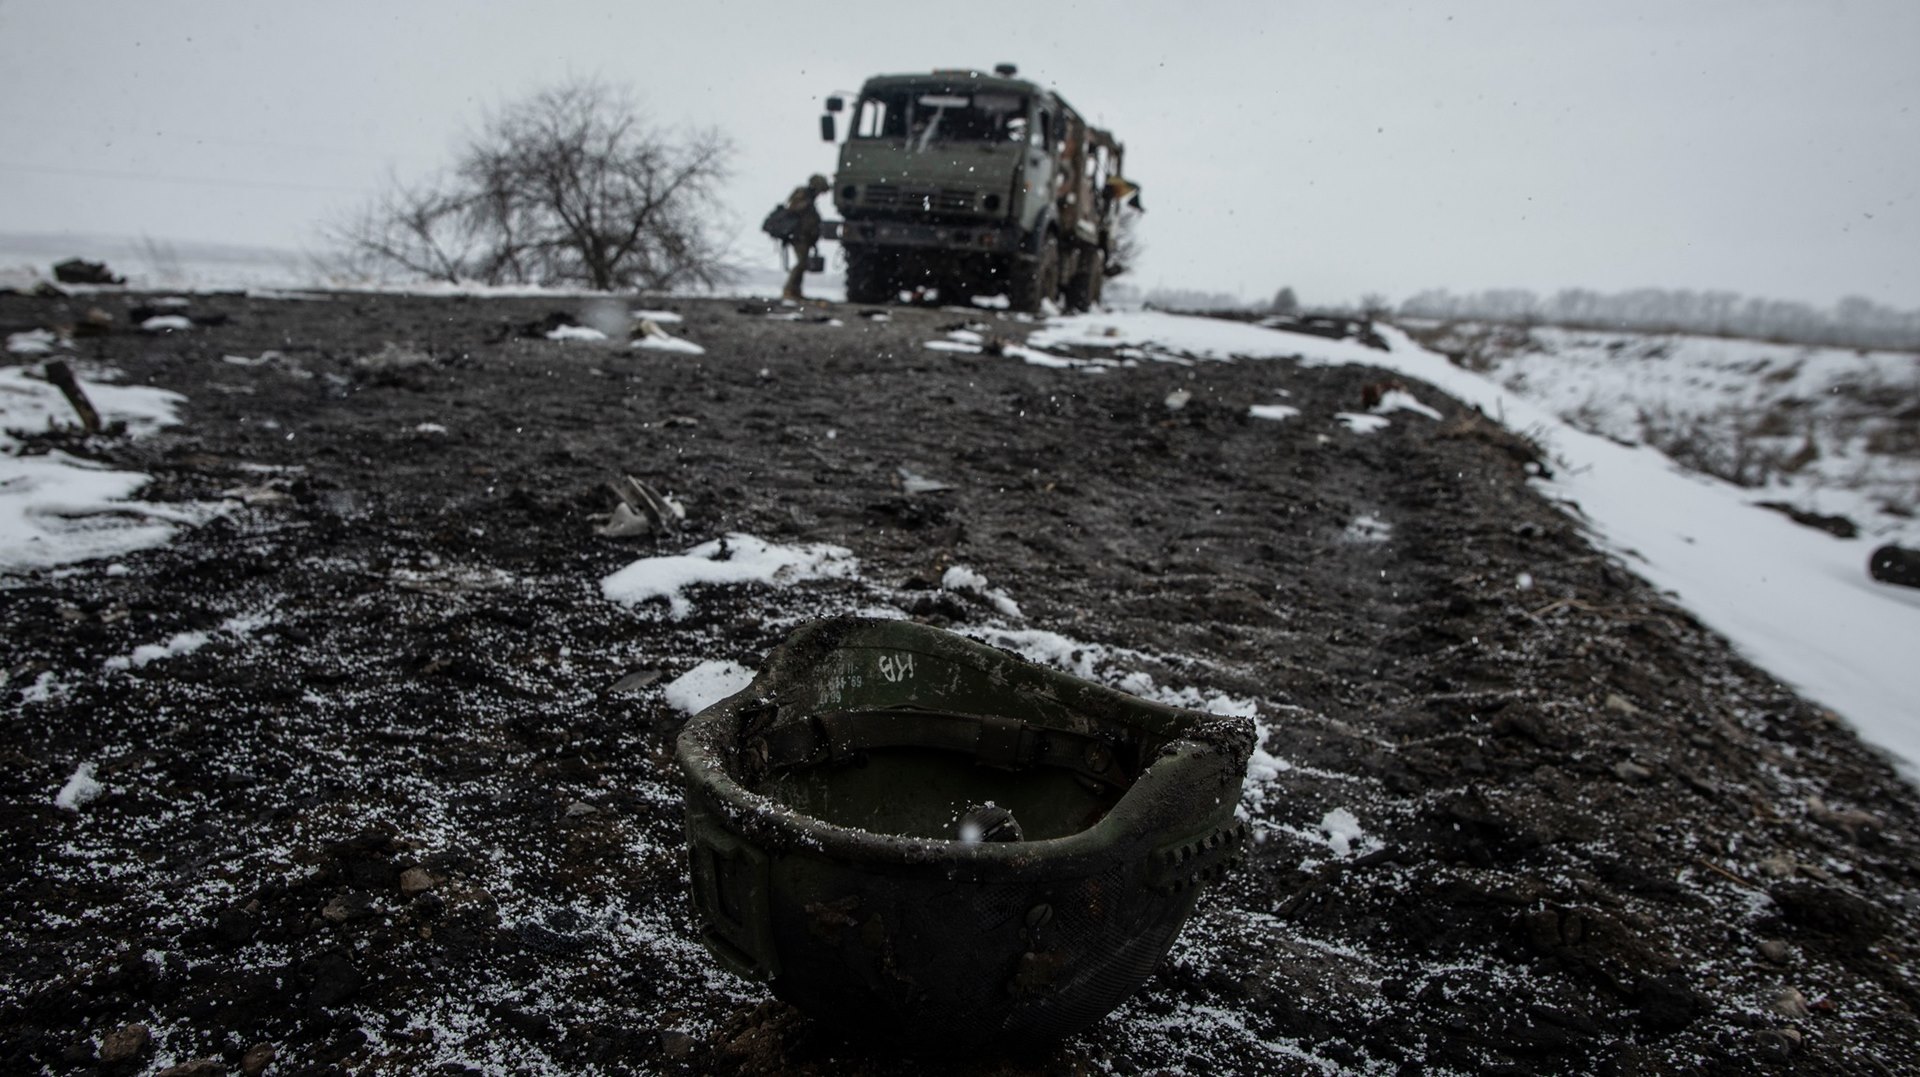 Źródło: 93 Wydzielona Brygada Zmechanizowana "Zimny ​​Jar" (Siły Zbrojne Ukrainy)